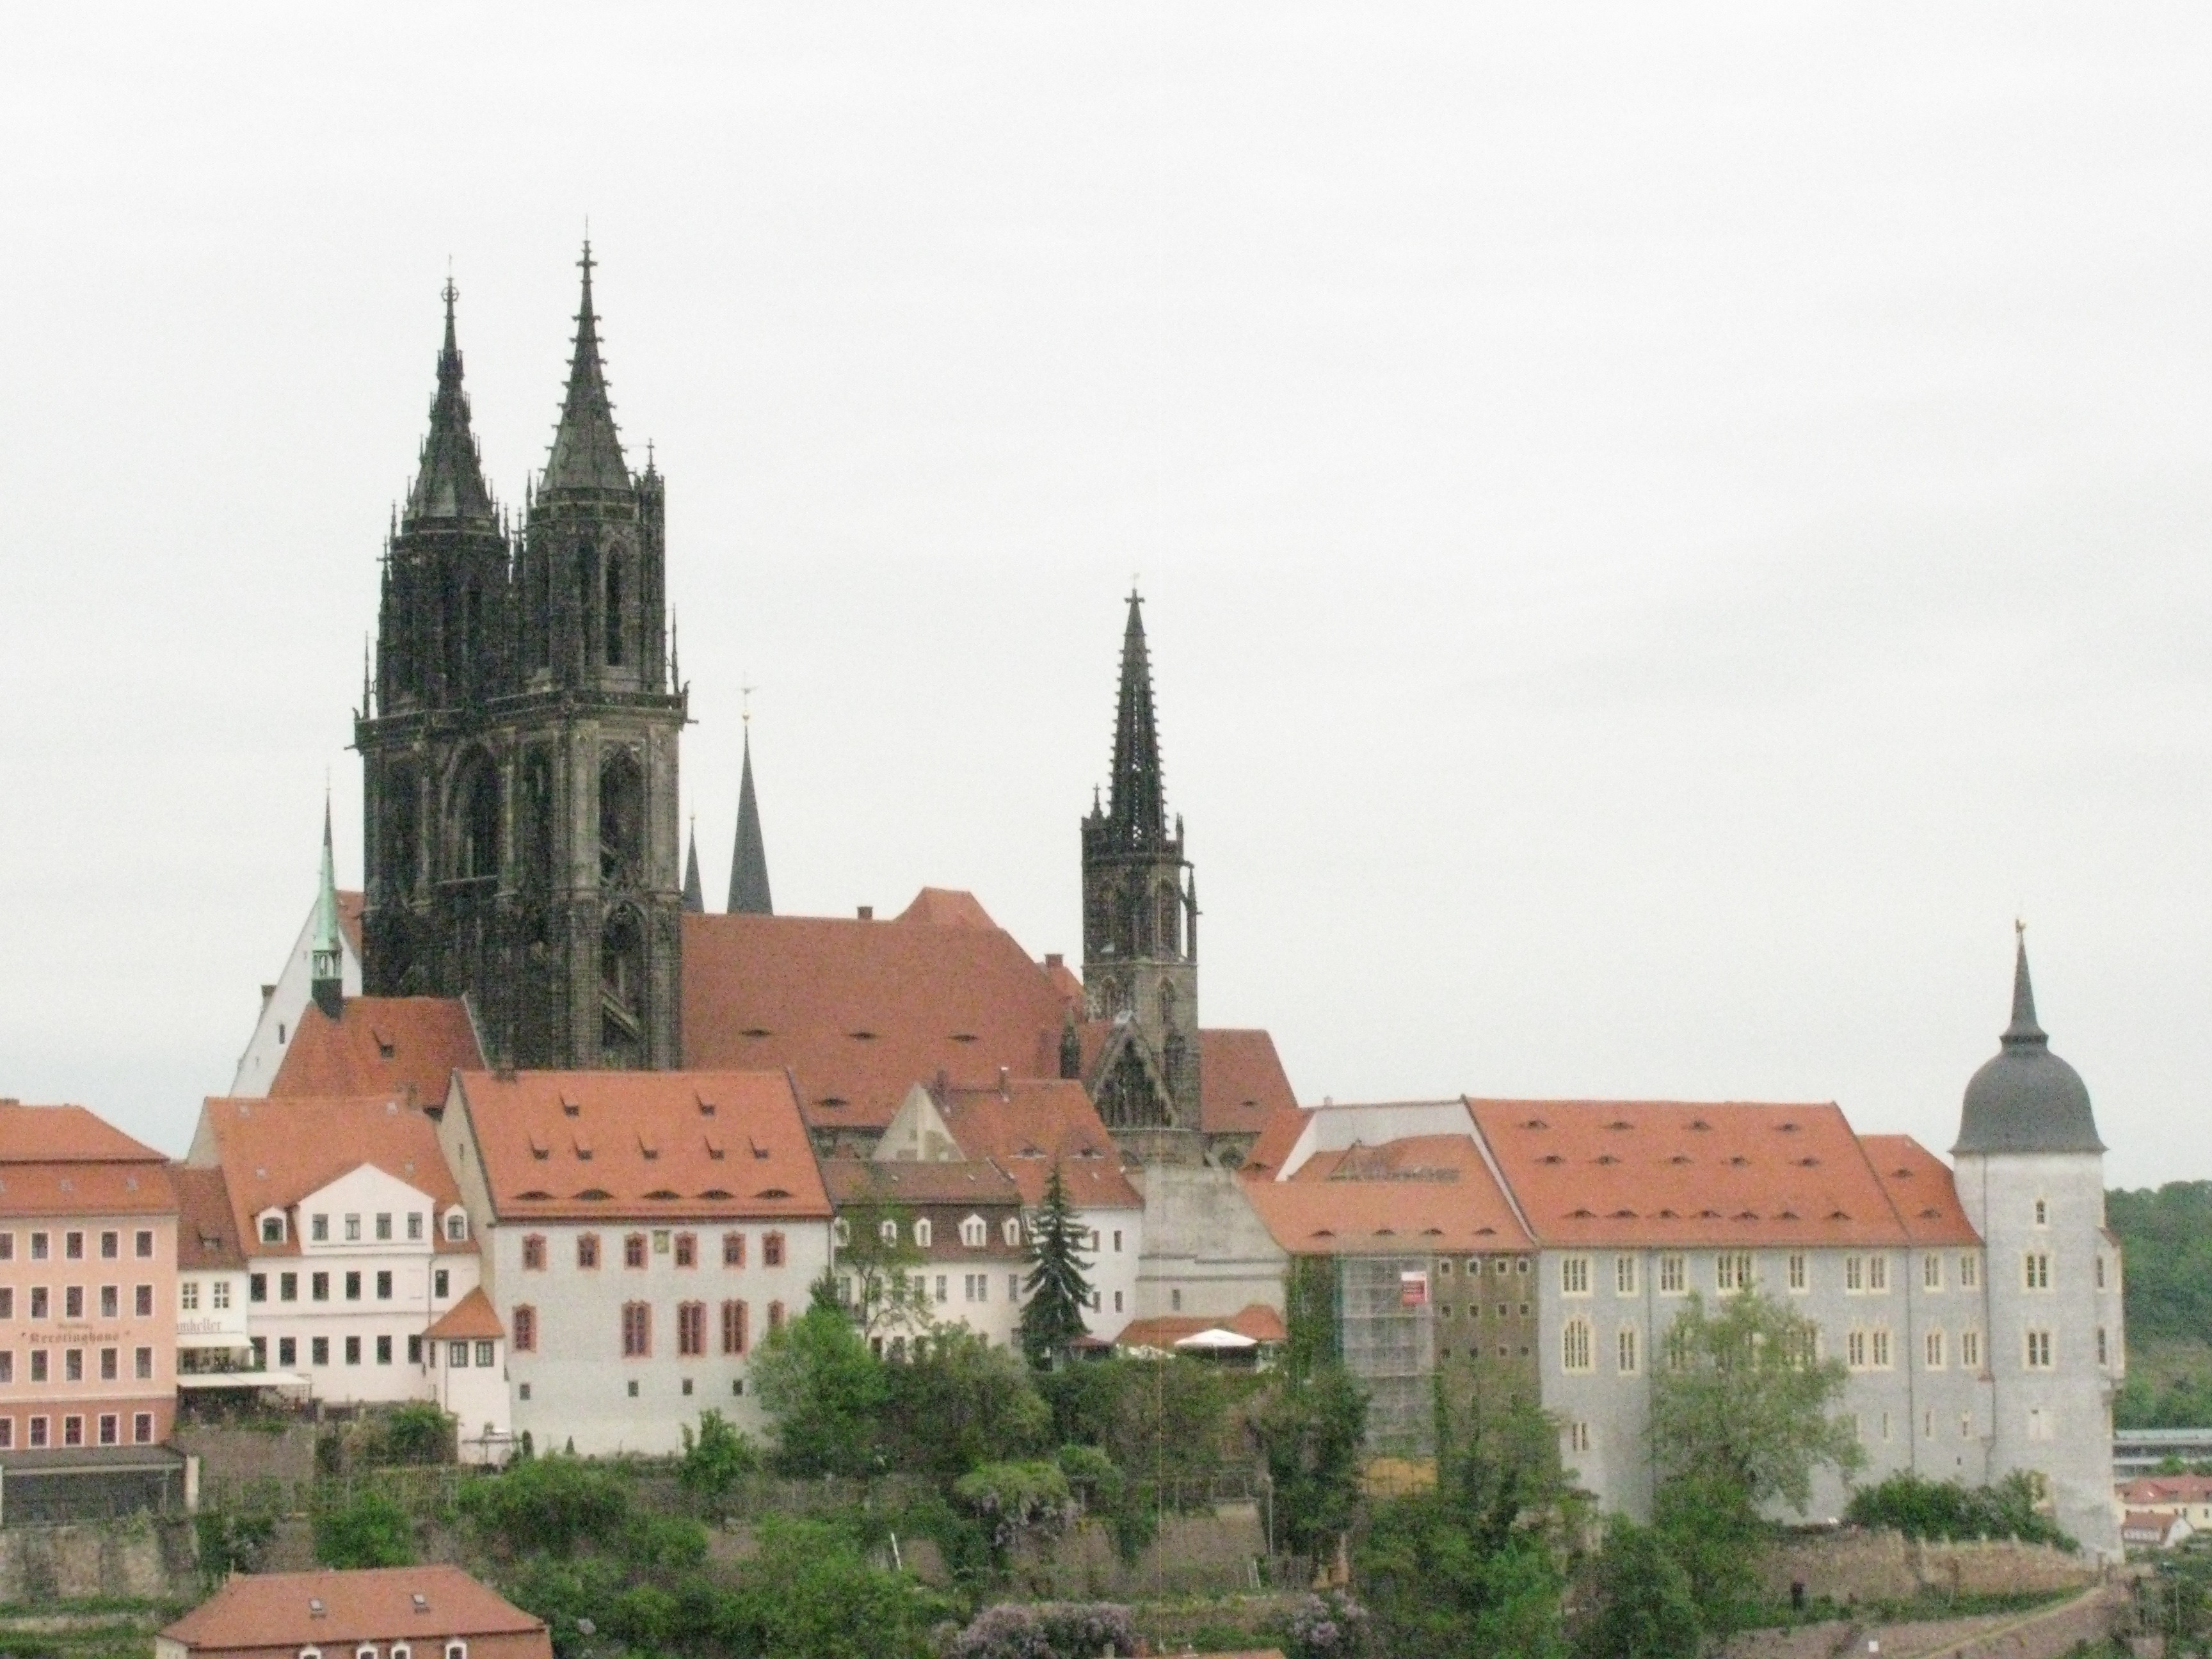 Albrechtsburg von der Frauenkirche aus gesehen.